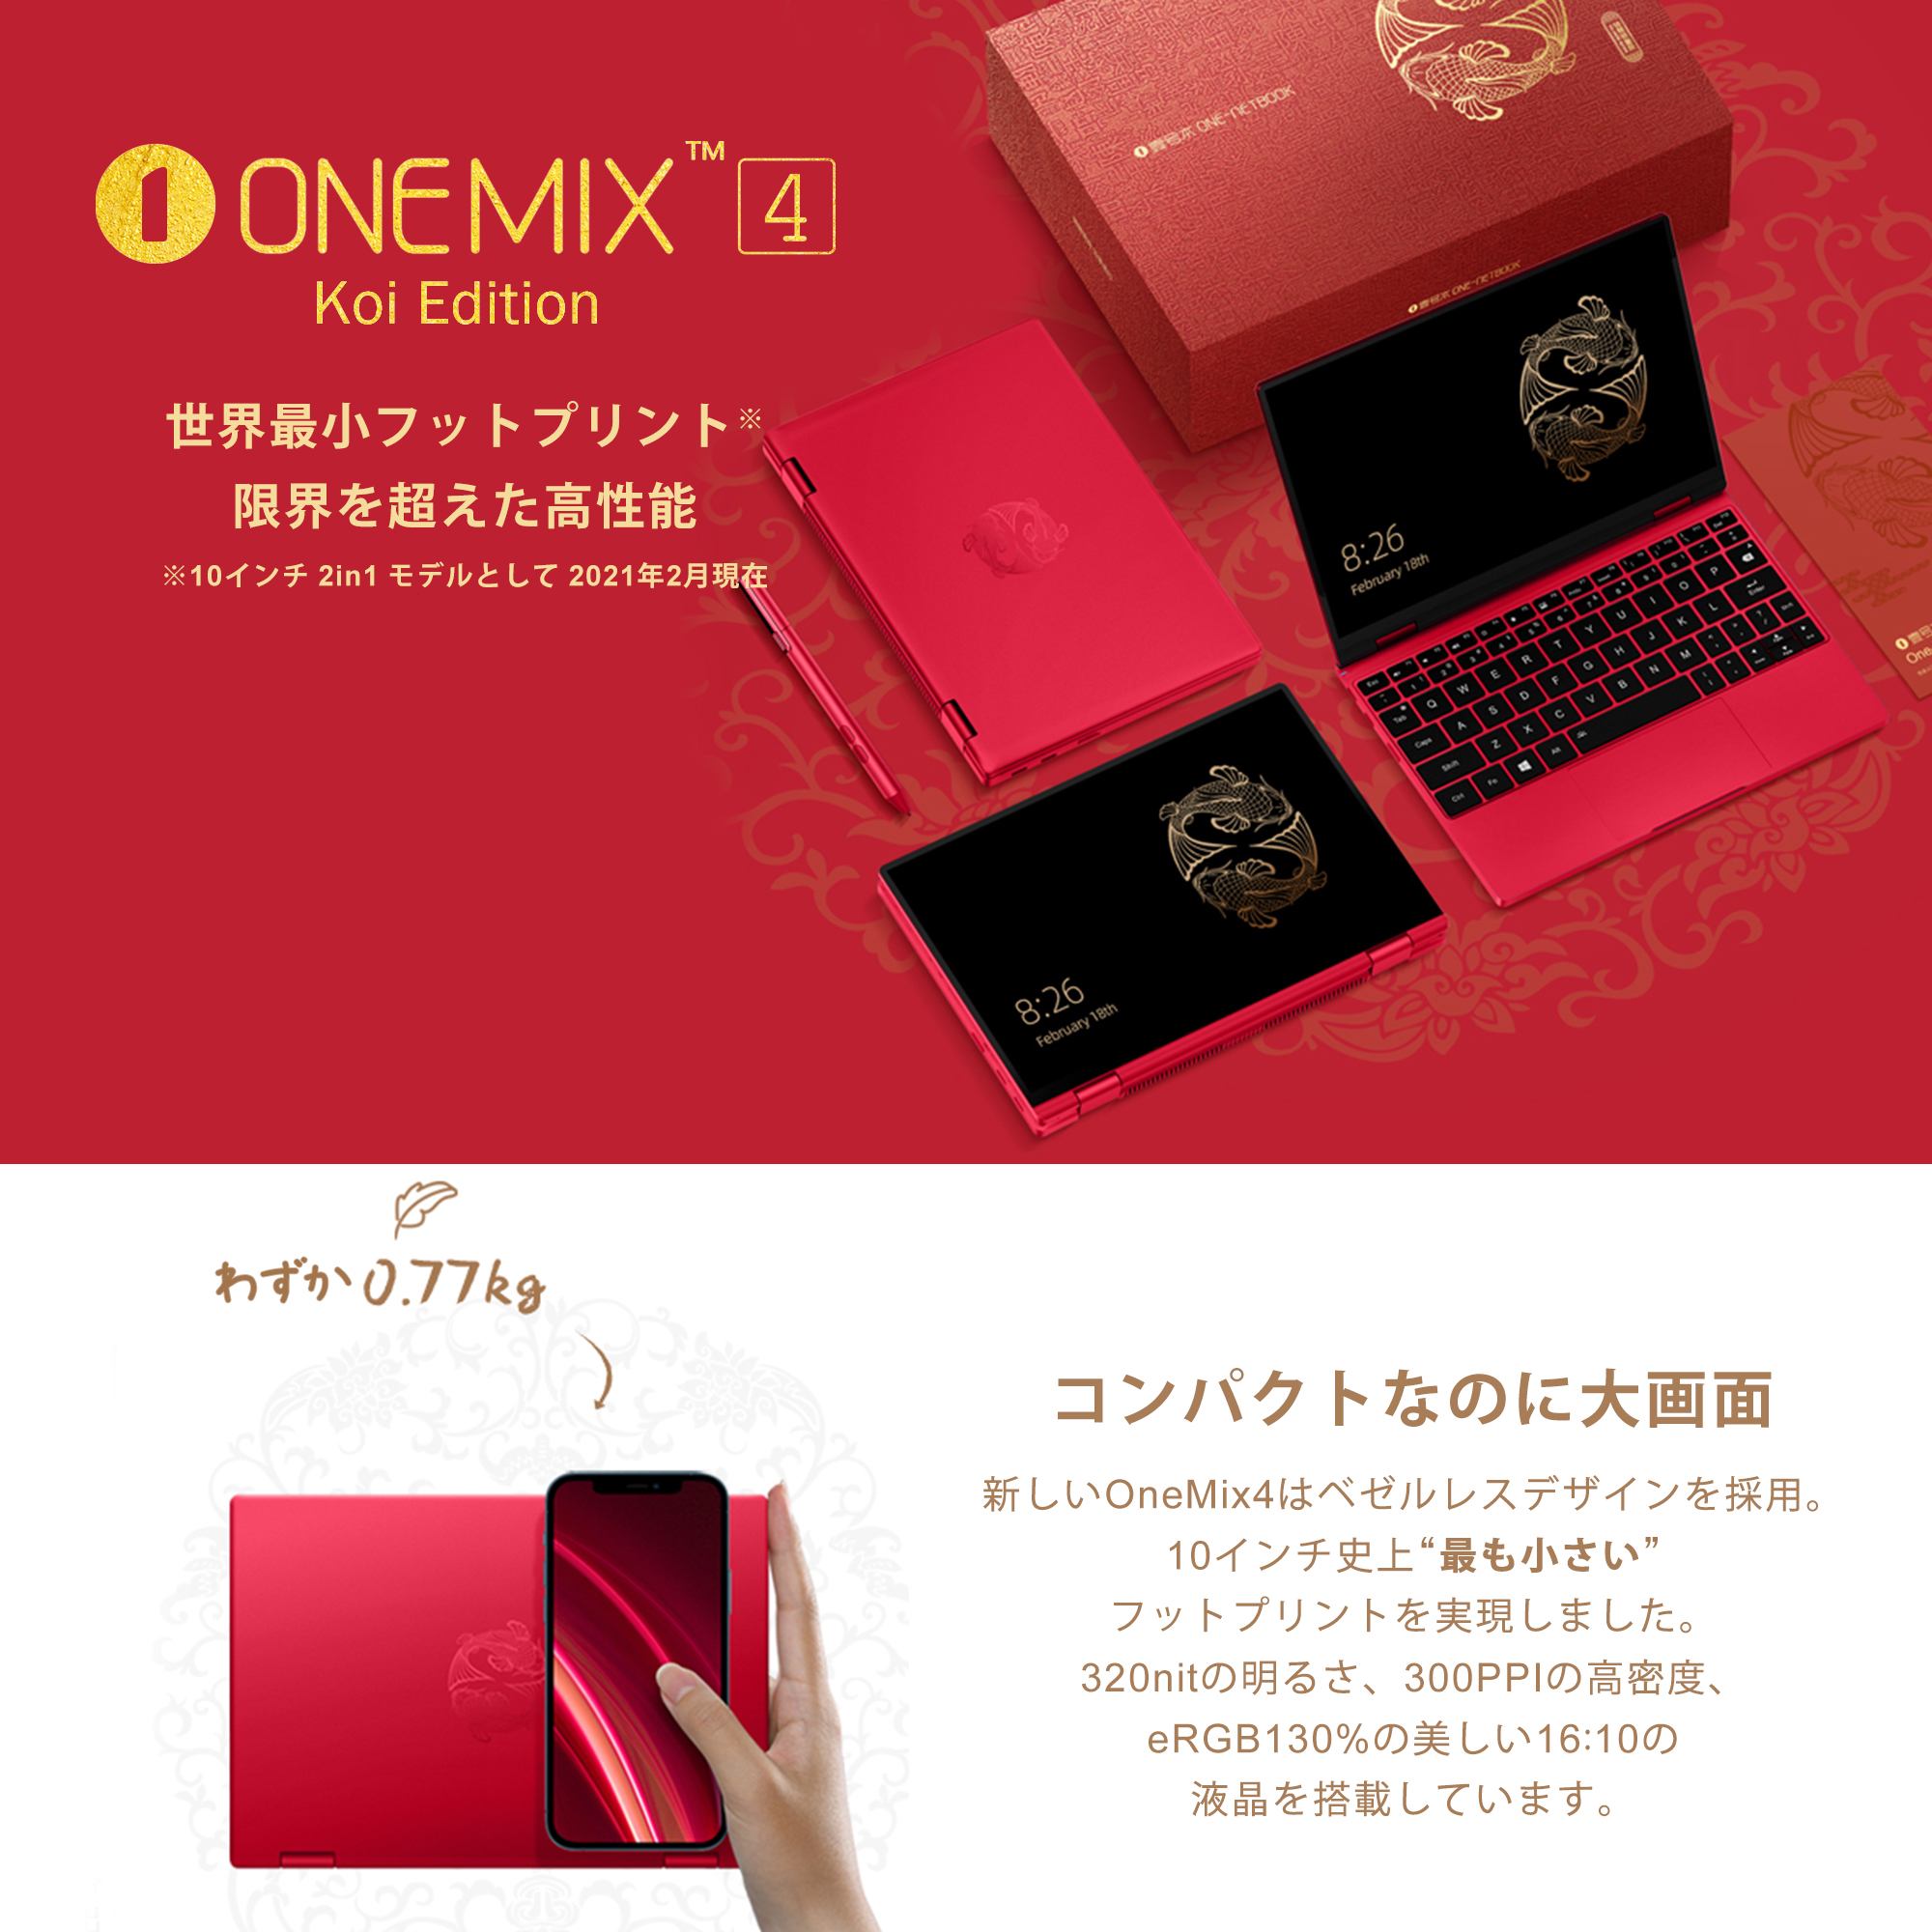 特別価格】《新古品》OneMix4 プラチナ Koi Limited Edition 国内正規